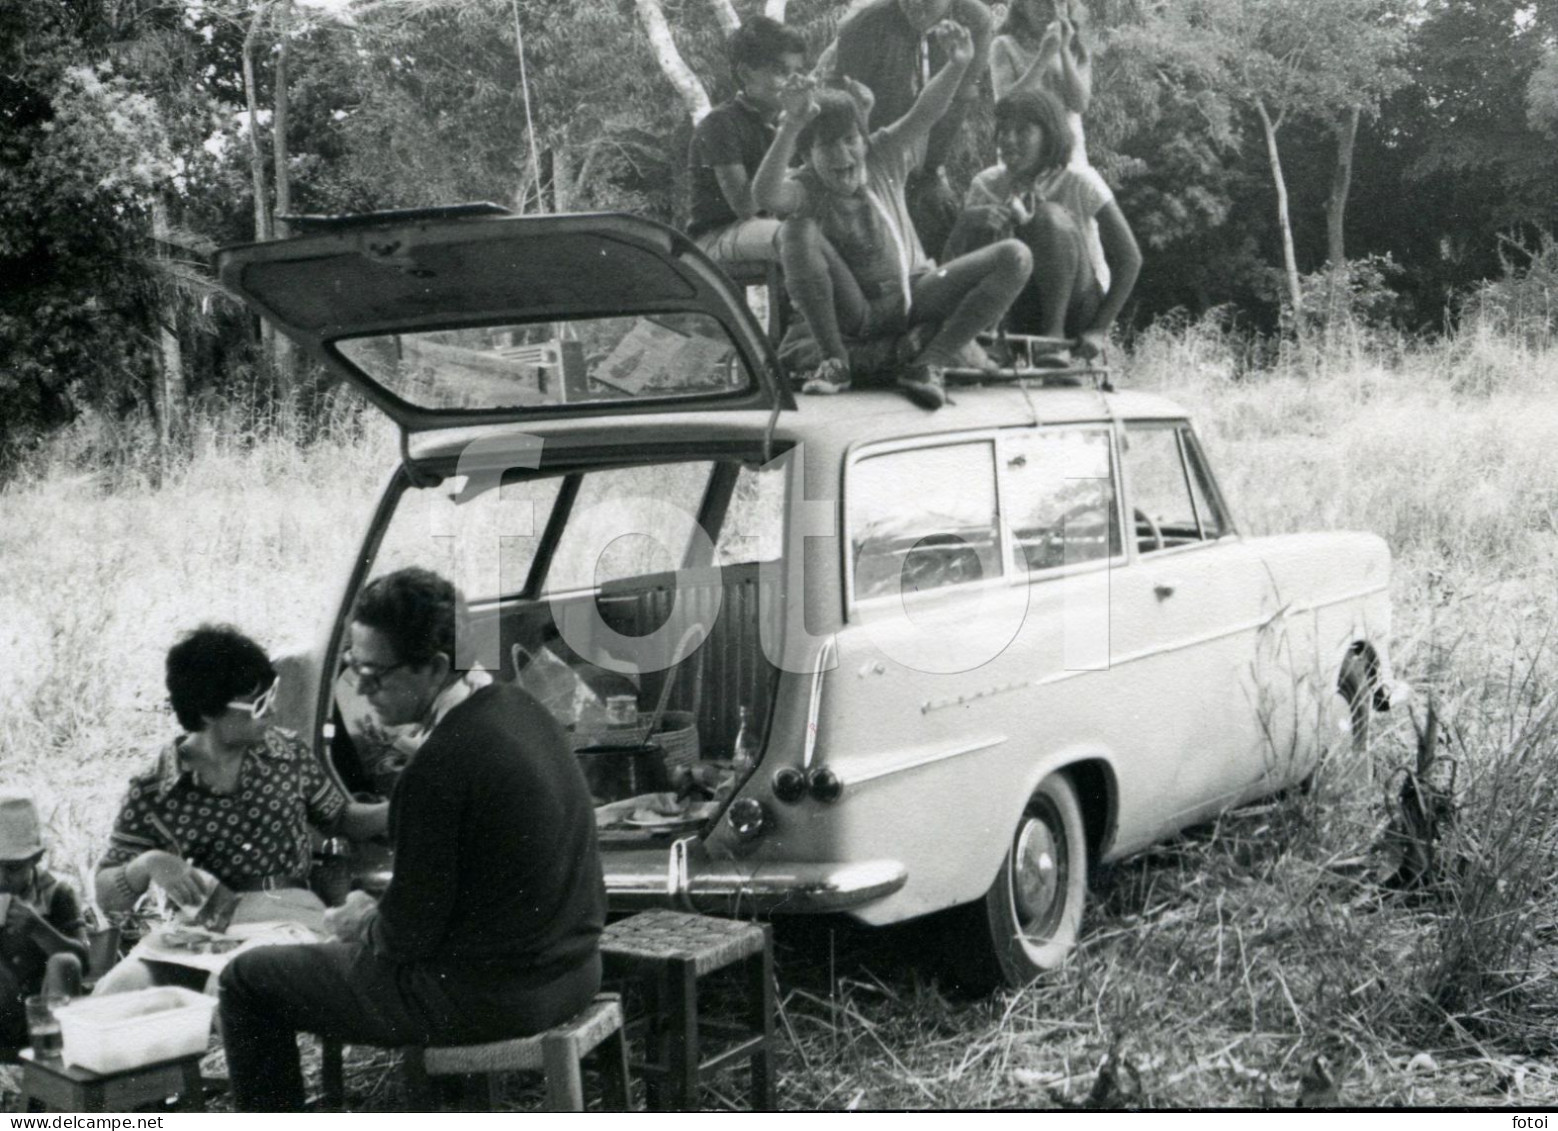 60s ORIGINAL AMATEUR PHOTO FOTO P2 OPEL REKORD CARAVAN OLDTIMER PICNIC MOZAMBIQUE MOÇAMBIQUE AFRICA  AFRIQUE AT112 - Automobiles